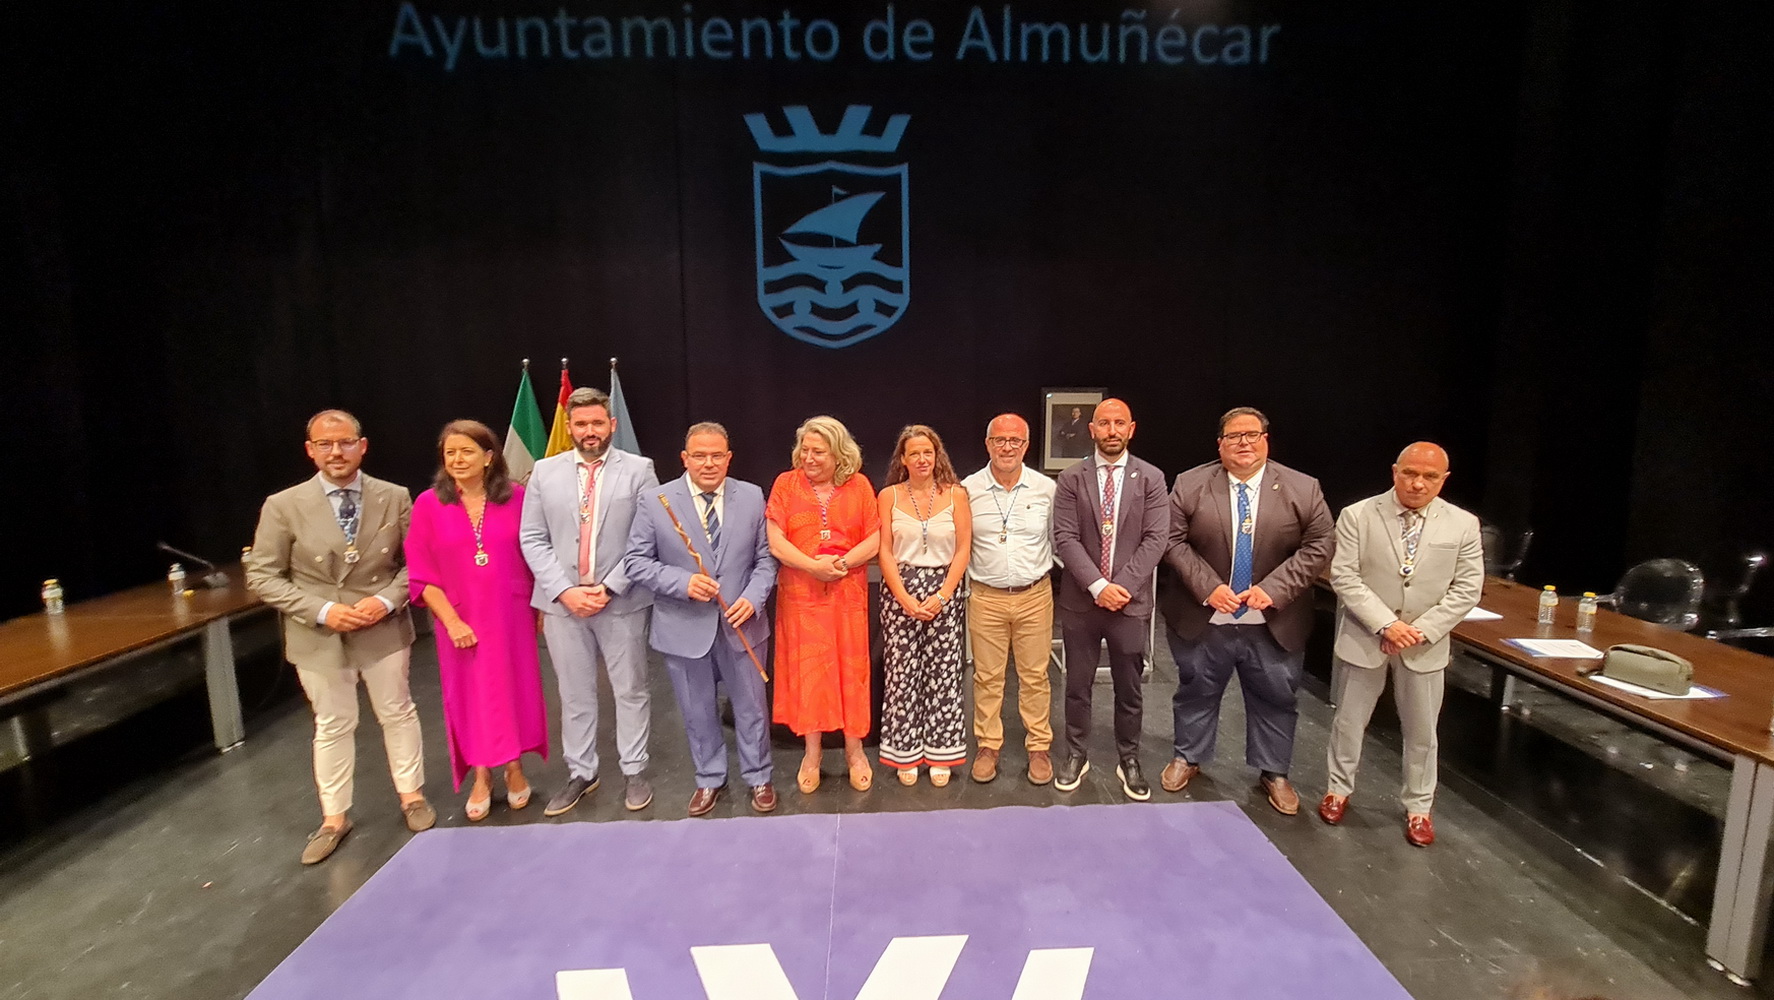 Juan José Ruiz Joya ya es el nuevo alcalde de Almuñécar y La Herradura:  “Mi oficina será  la calle para atender y escuchar personalmente a los vecinos”.